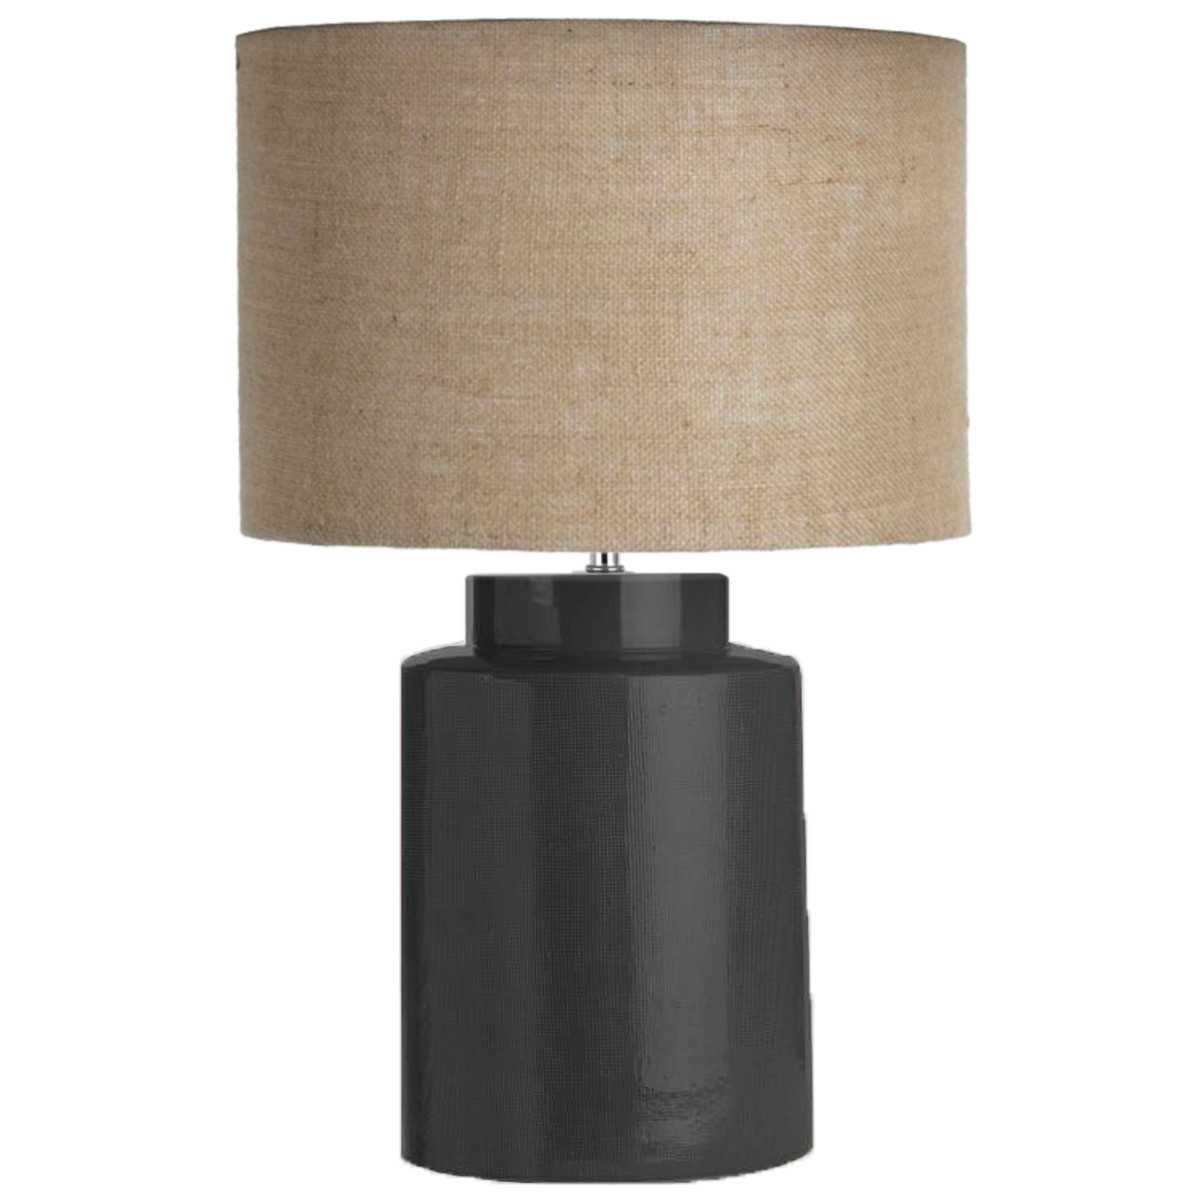 SH Santana Ceramic Table Lamp With Natural Shade